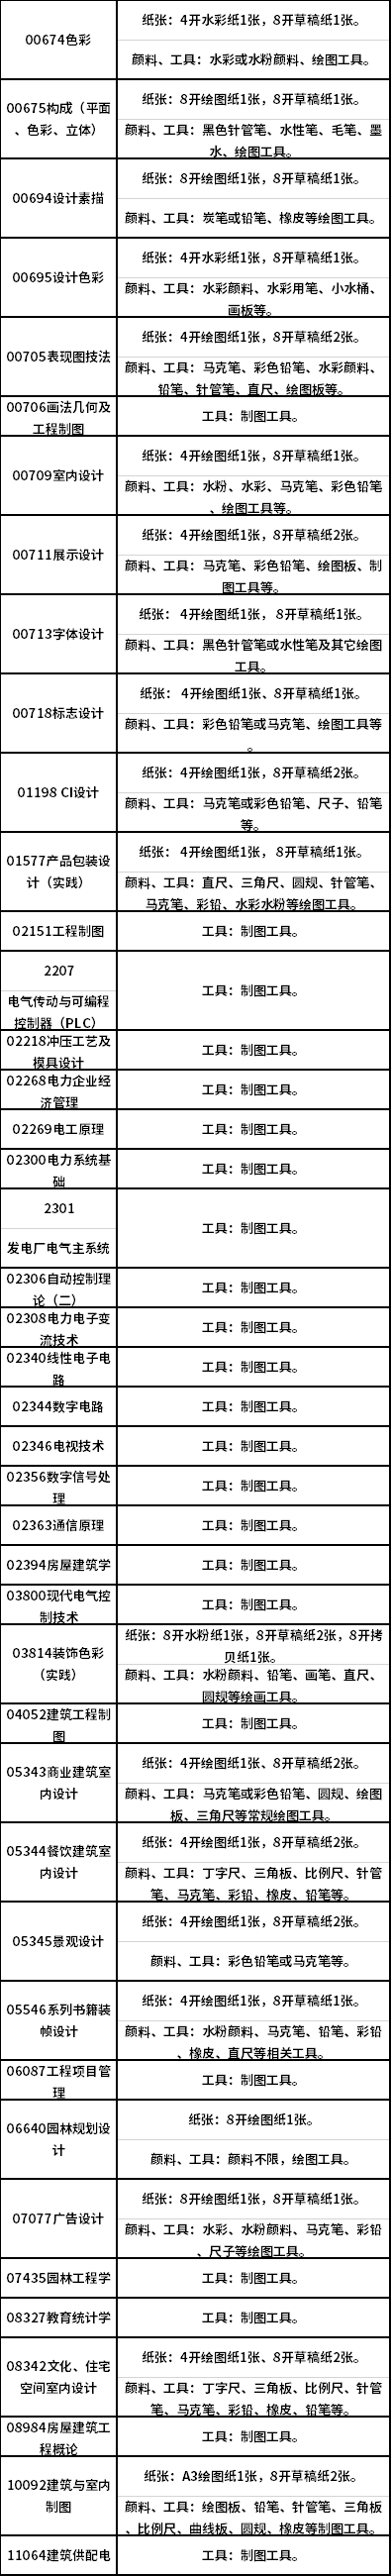 2021年4月广西高等教育自学考试特殊课程考试规定